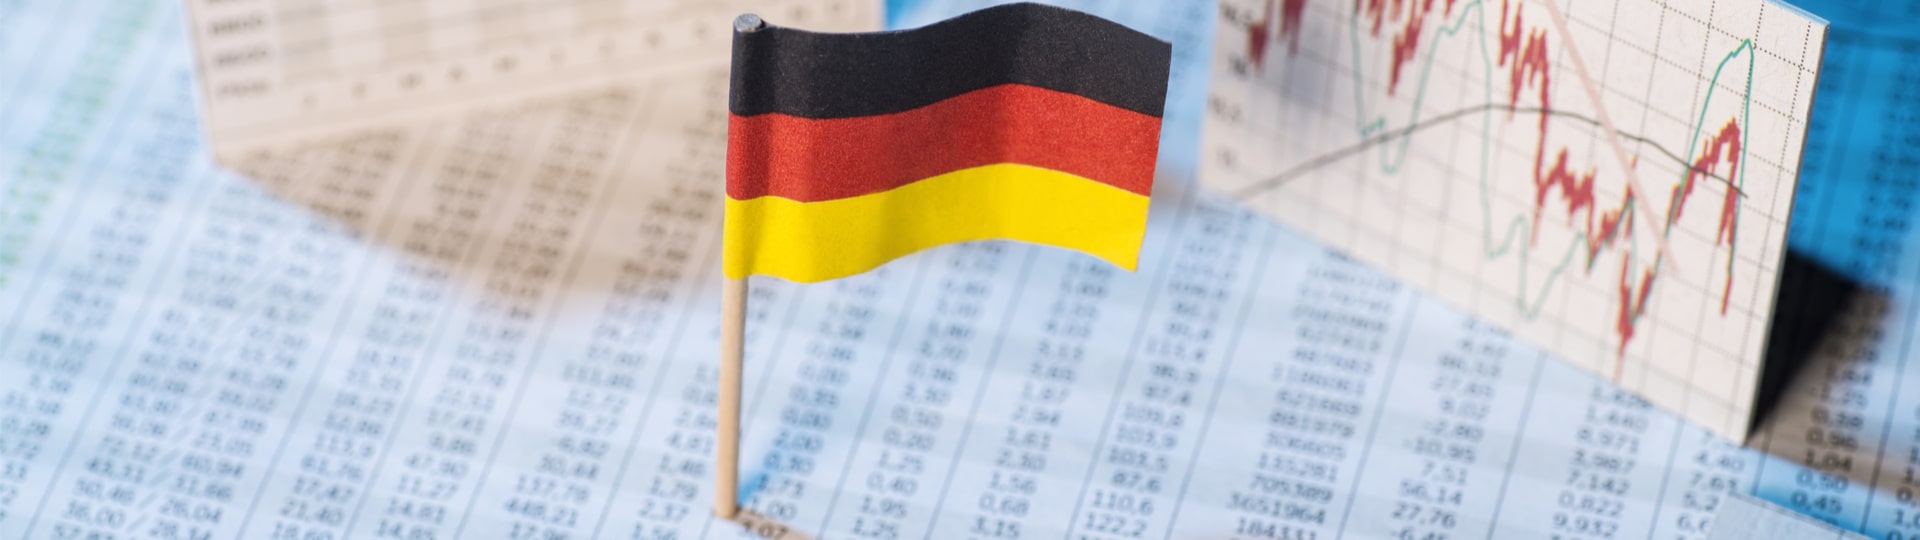 Německá ekonomika ve druhém čtvrtletí vykázala růst o 0,1 procenta